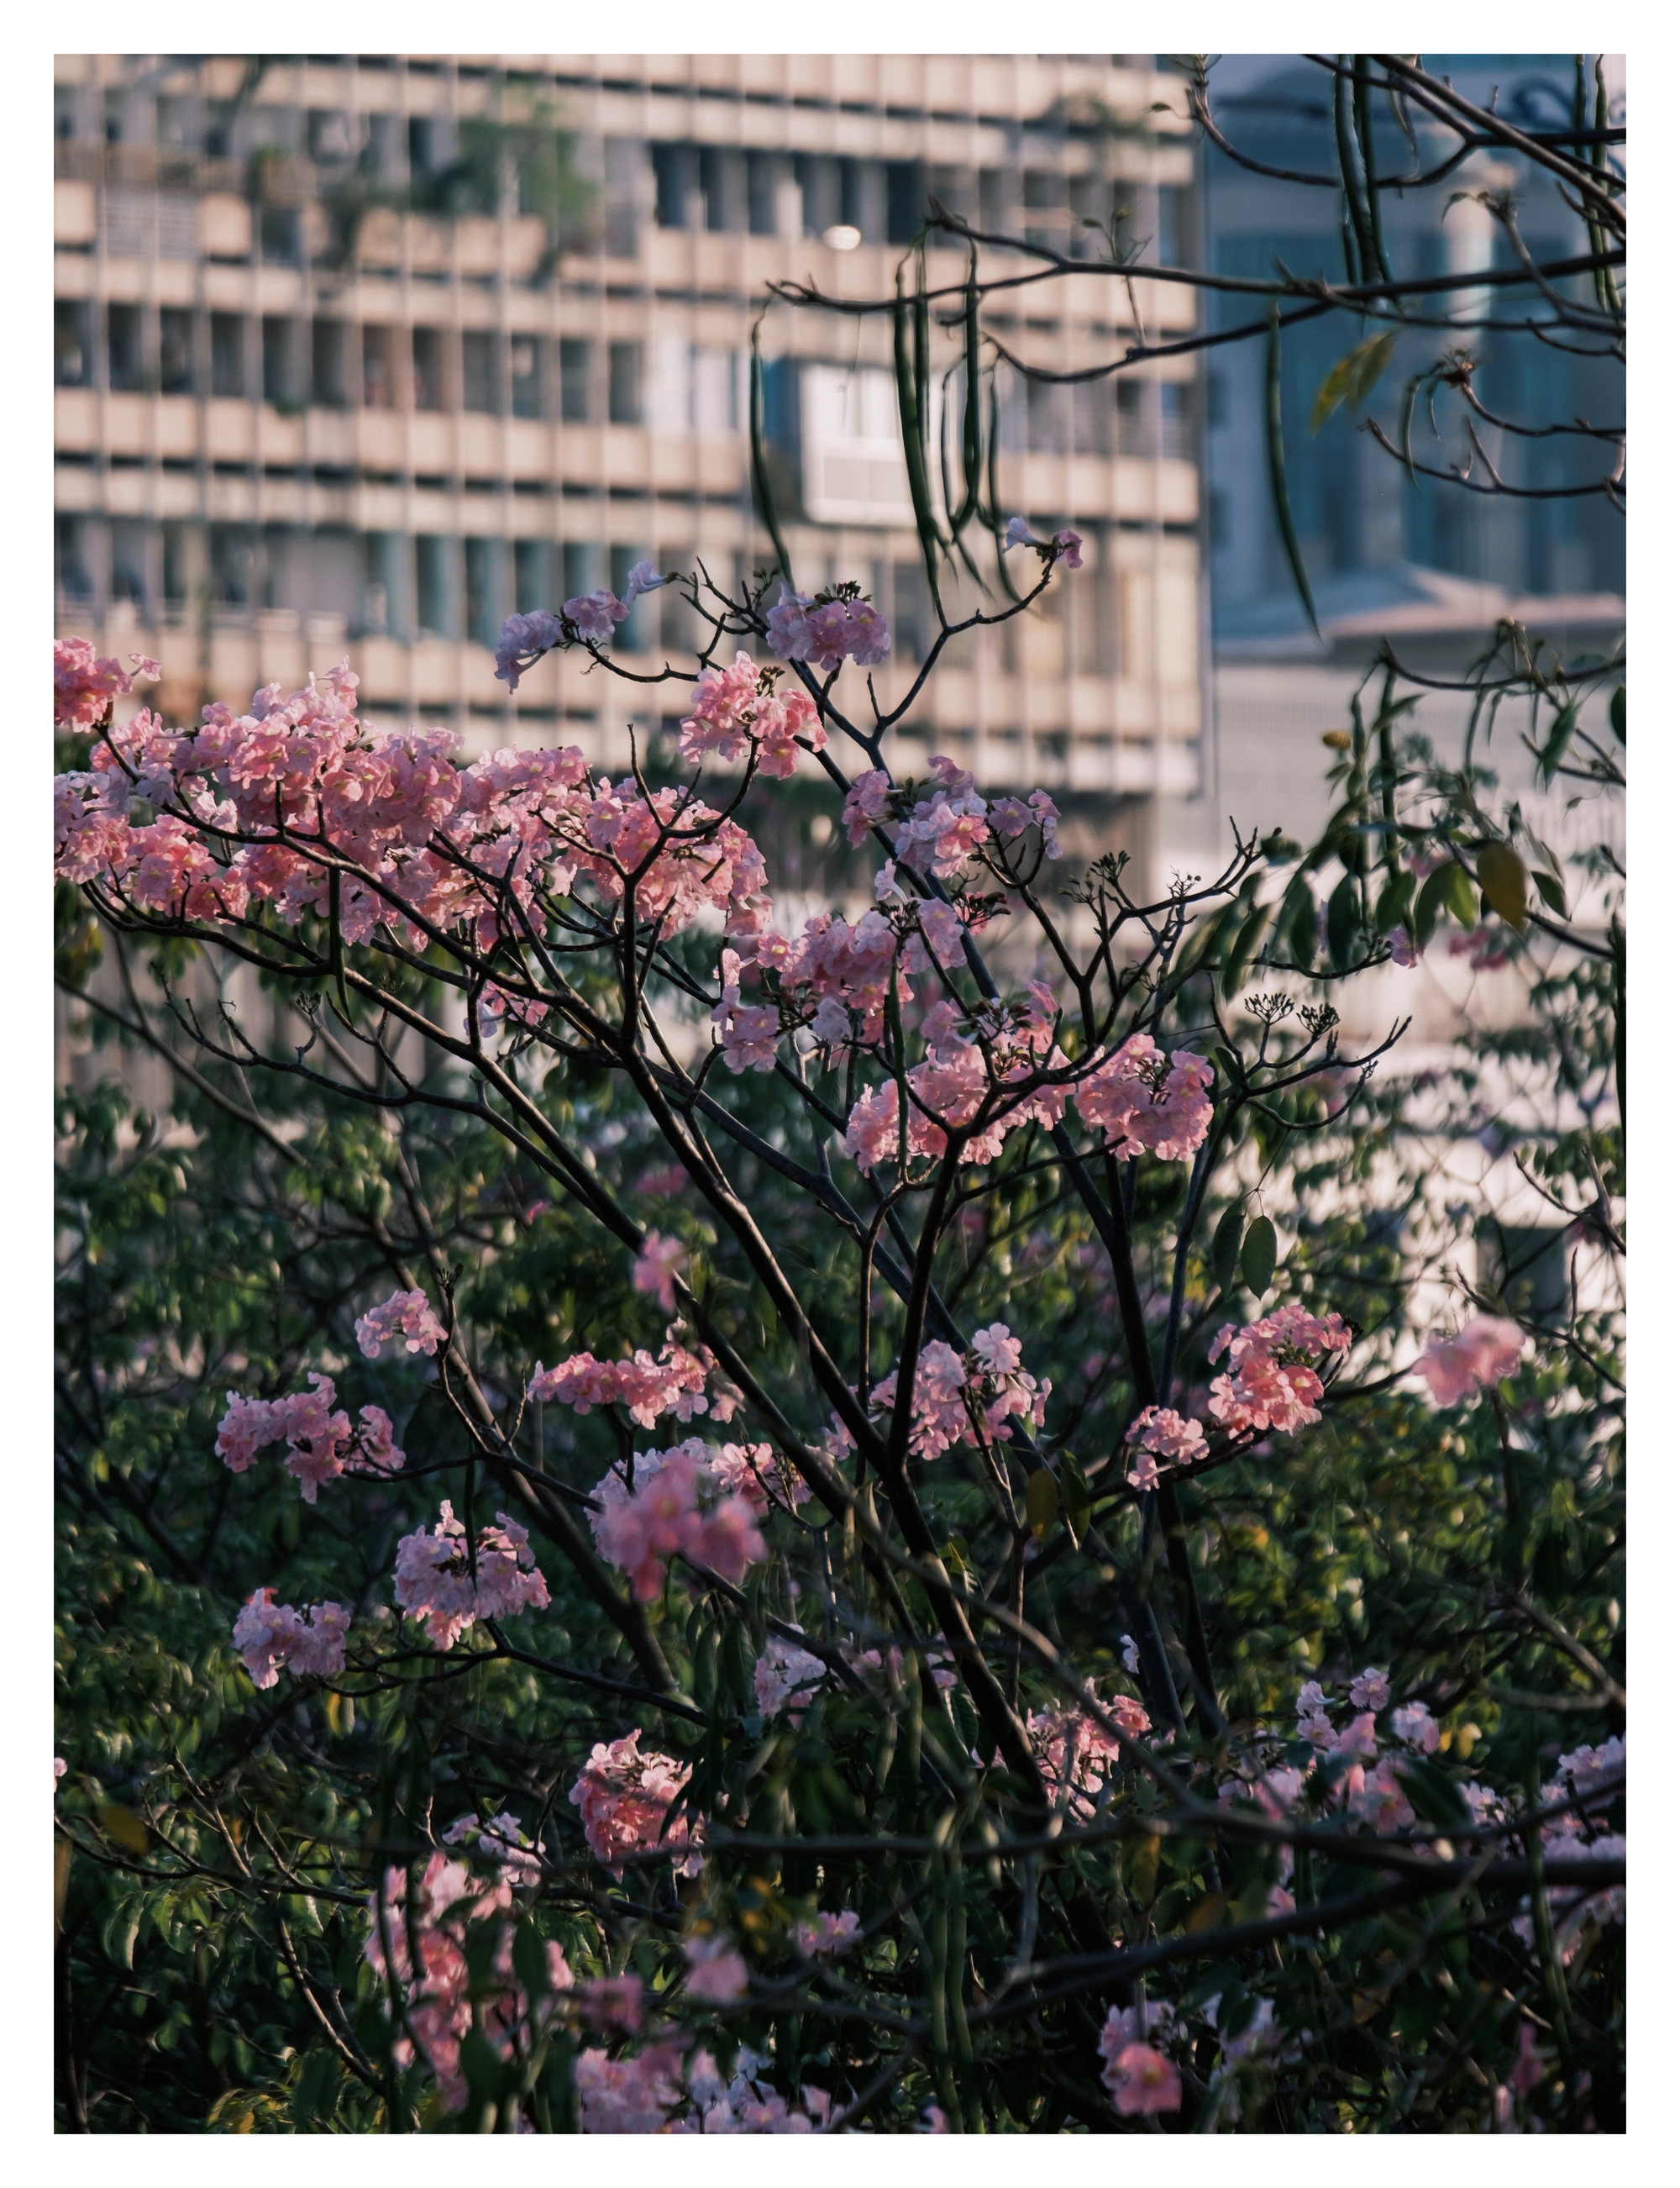 Mùa kèn hồng rợp trời Sài Gòn, chợt thấy thành phố mộng mơ biết bao giữa sắc hoa rực rỡ- Ảnh 15.